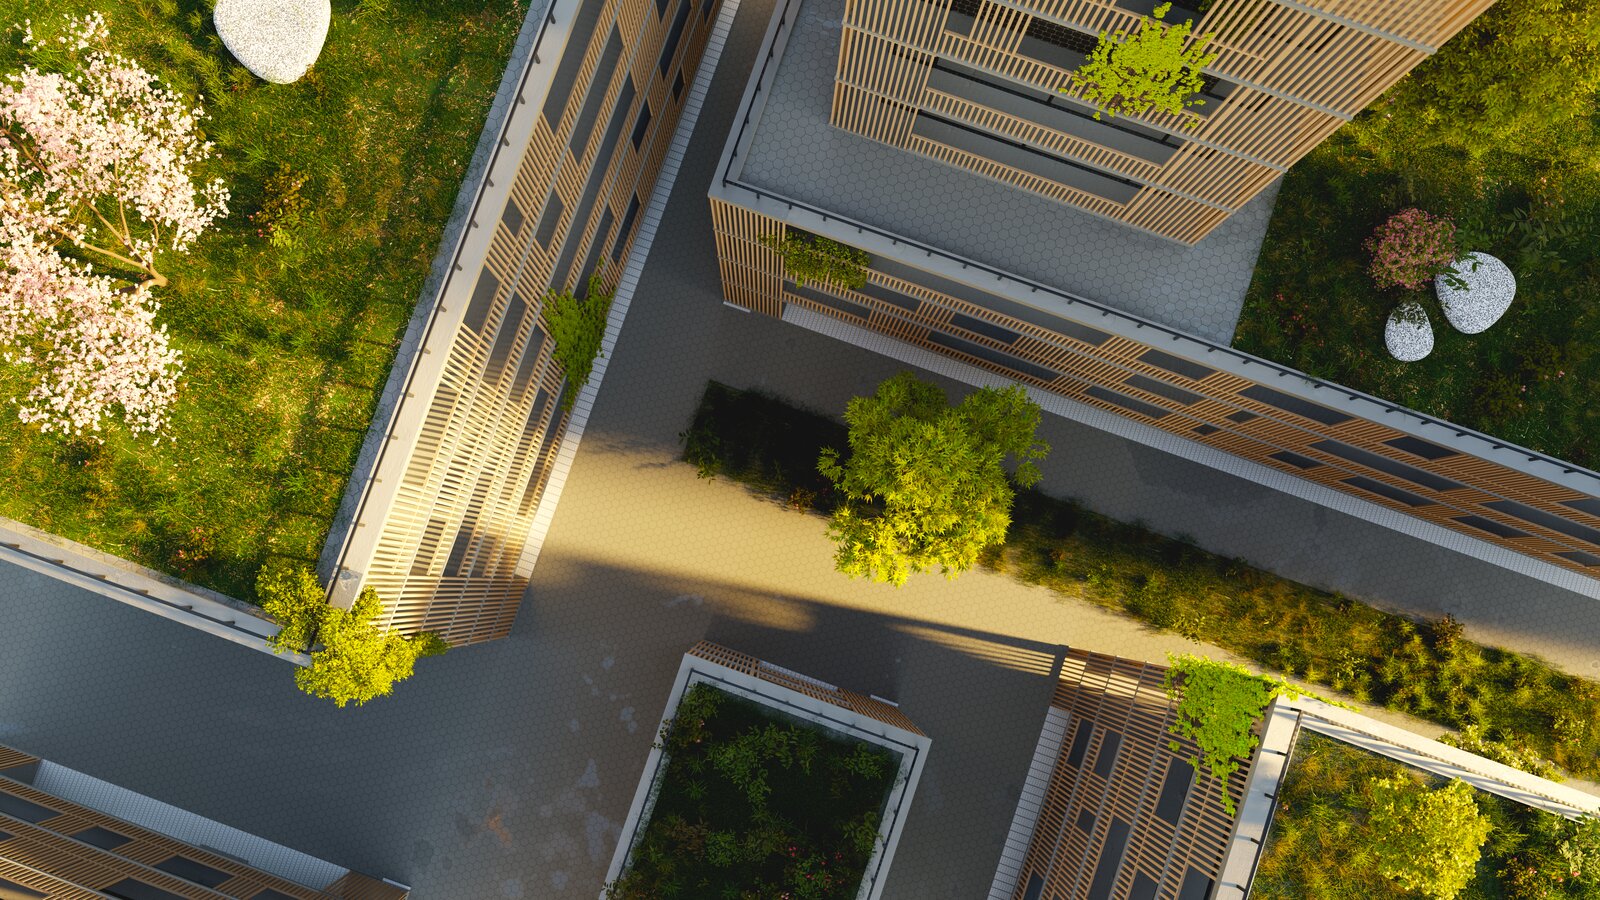 Bygninger med planter og gress på taket sett ovenfra